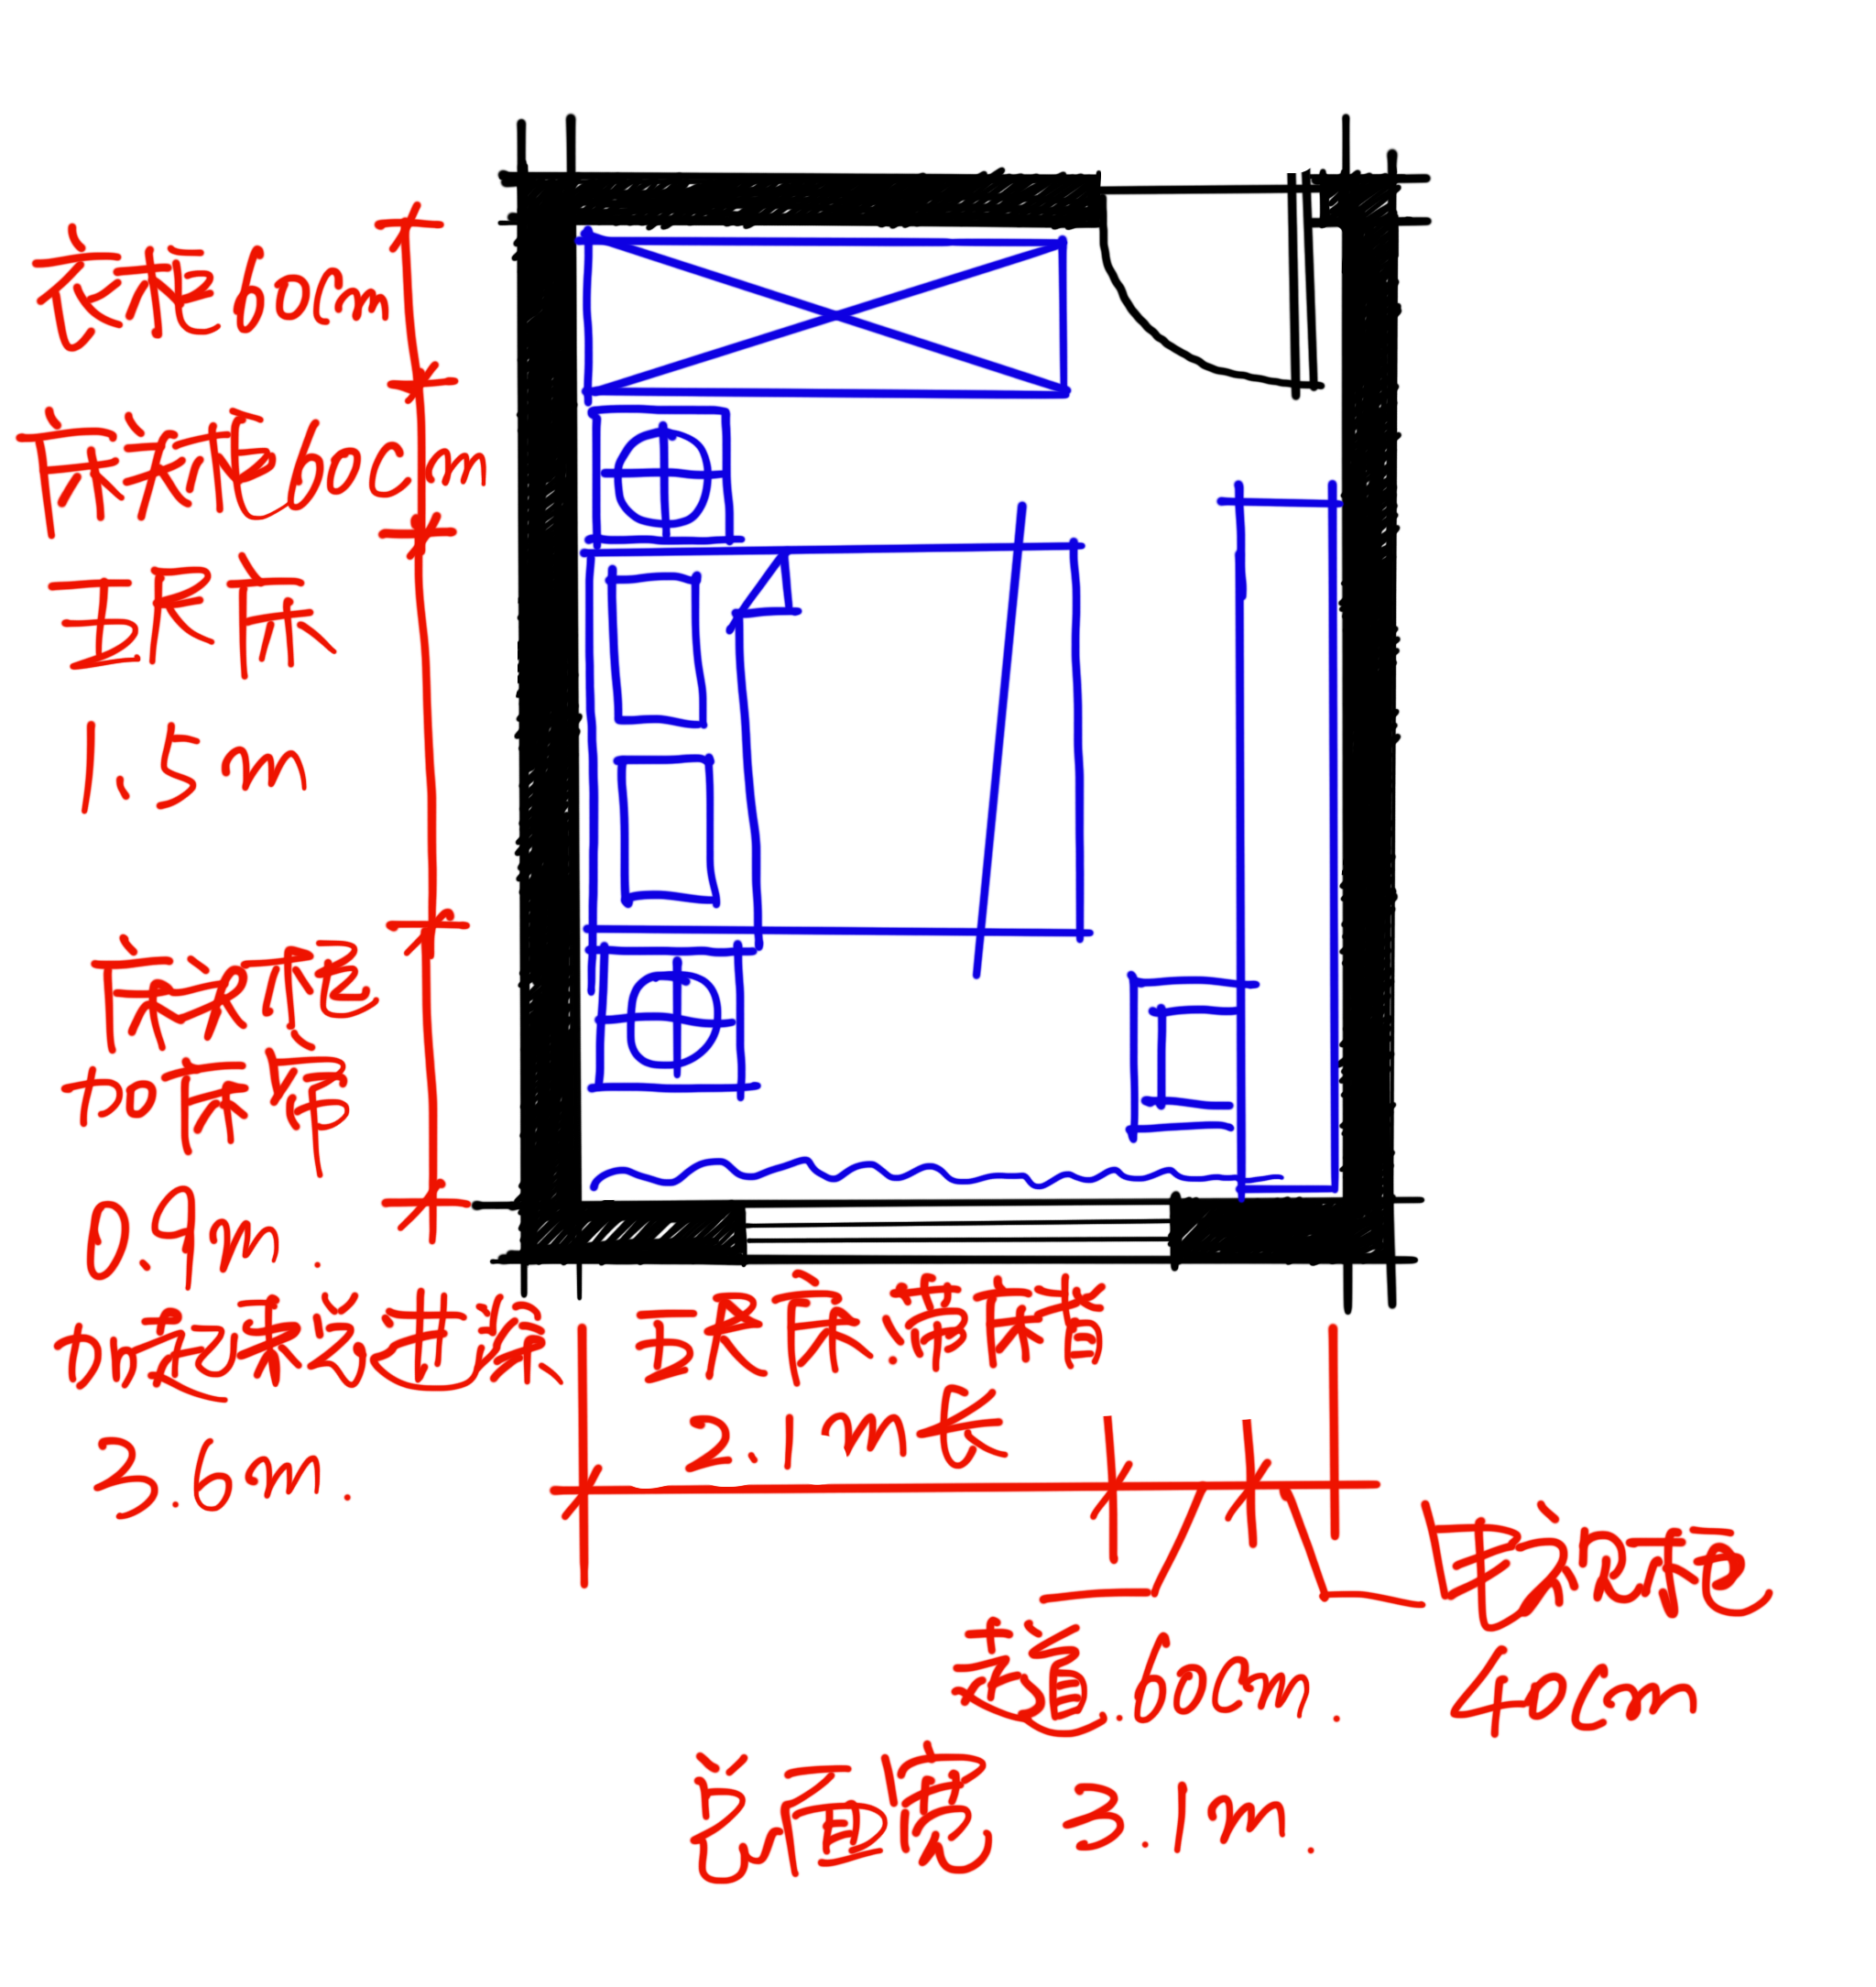 最明显的就是卧室,一个标准的卧室,净尺寸应该是34米x3